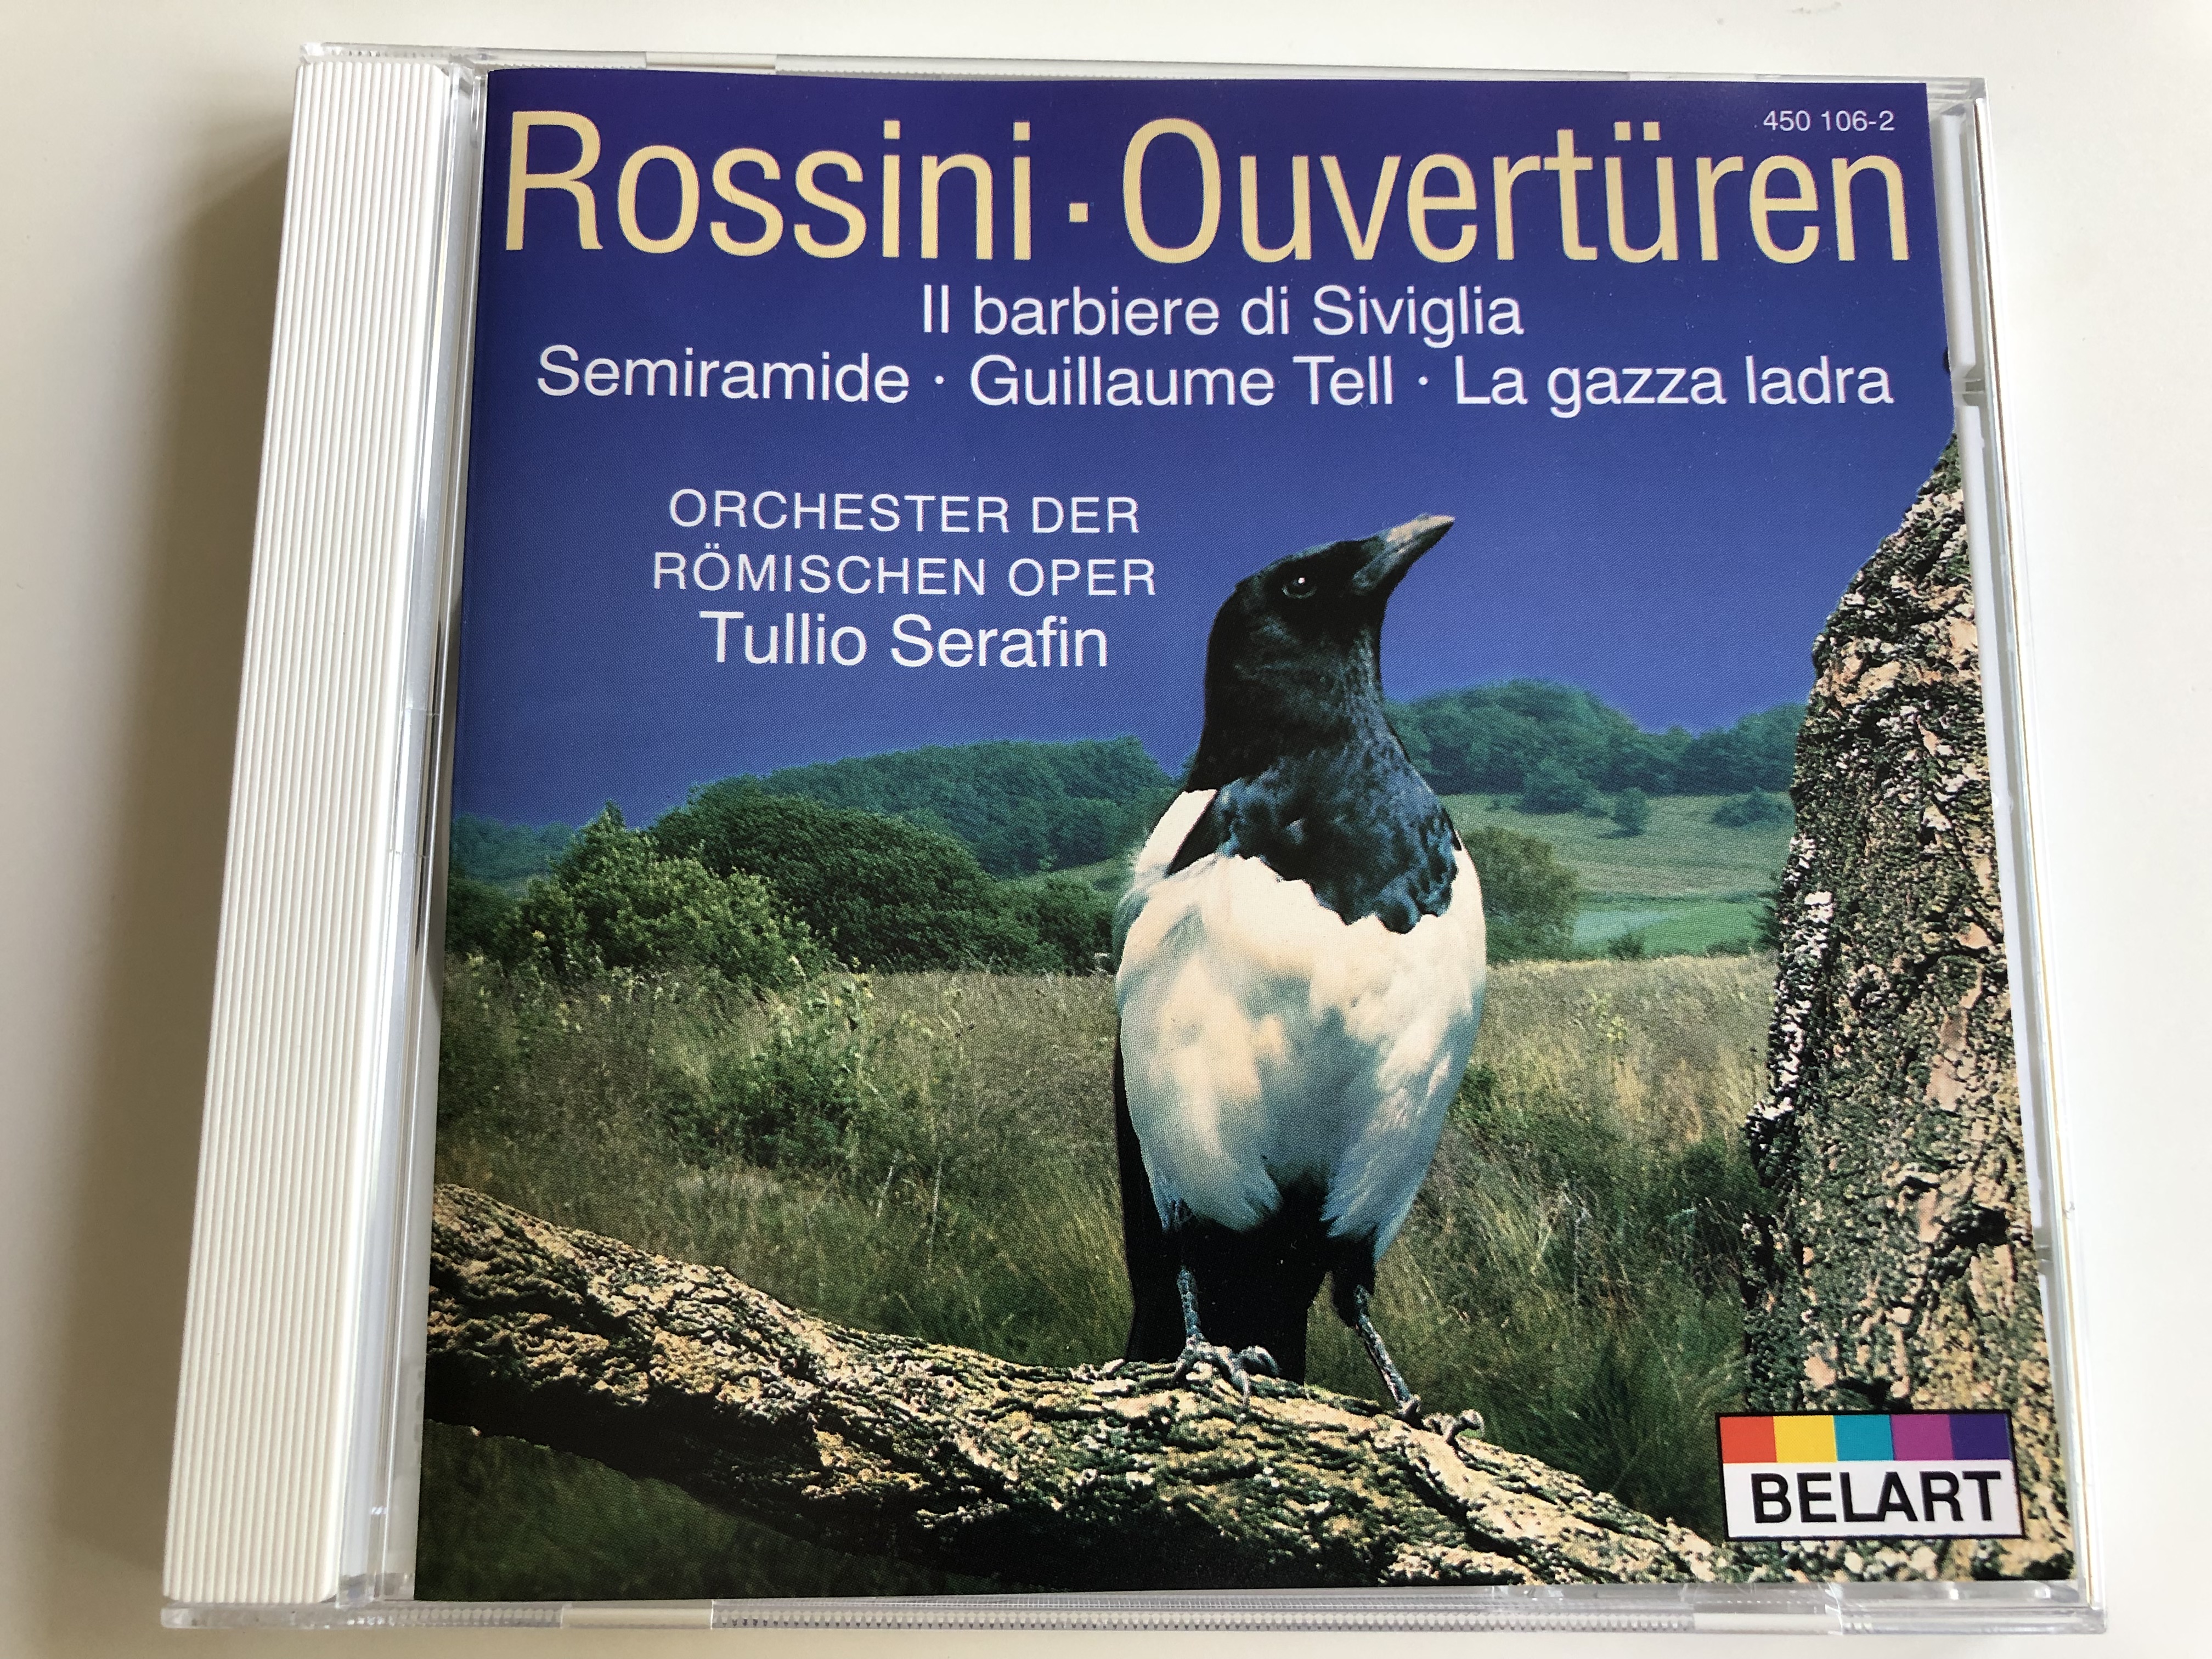 rossini-ouvert-ren-il-barbiere-di-siviglia-semiramide-guillaume-tell-la-gazza-ladra-orchester-der-r-mischen-oper-conducted-by-tullio-serafin-belart-audio-cd-1-.jpg